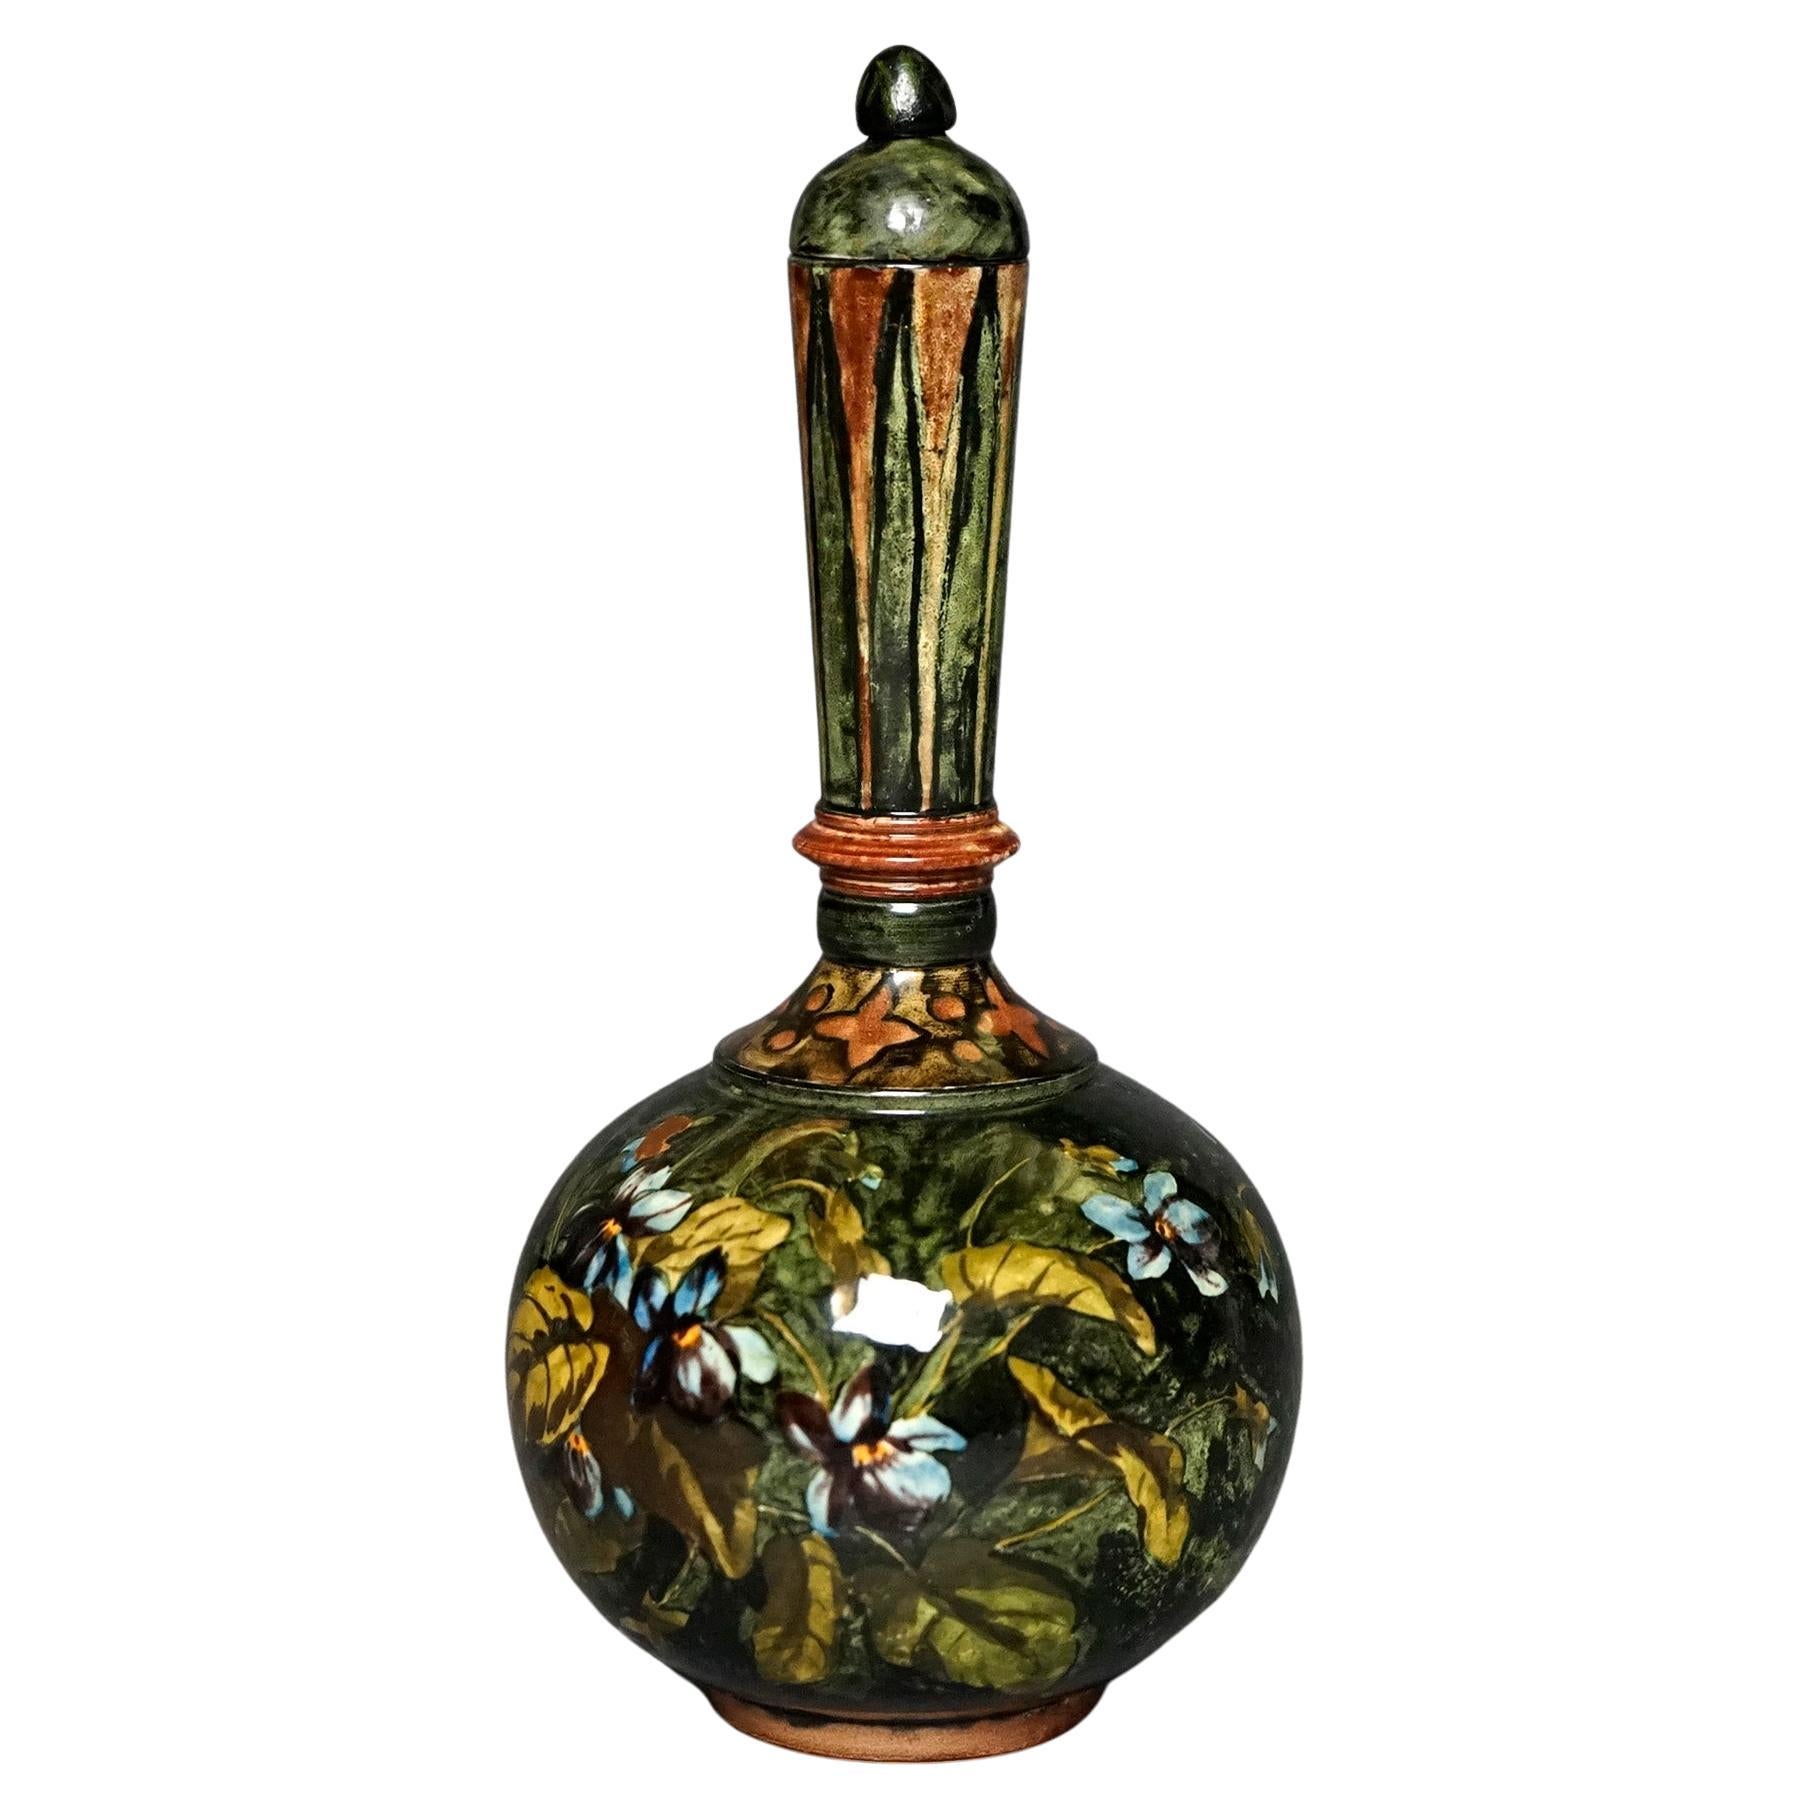 Rare Antique John Bennett Art Pottery Lidded Bottle Vase, New York, Dated 1878